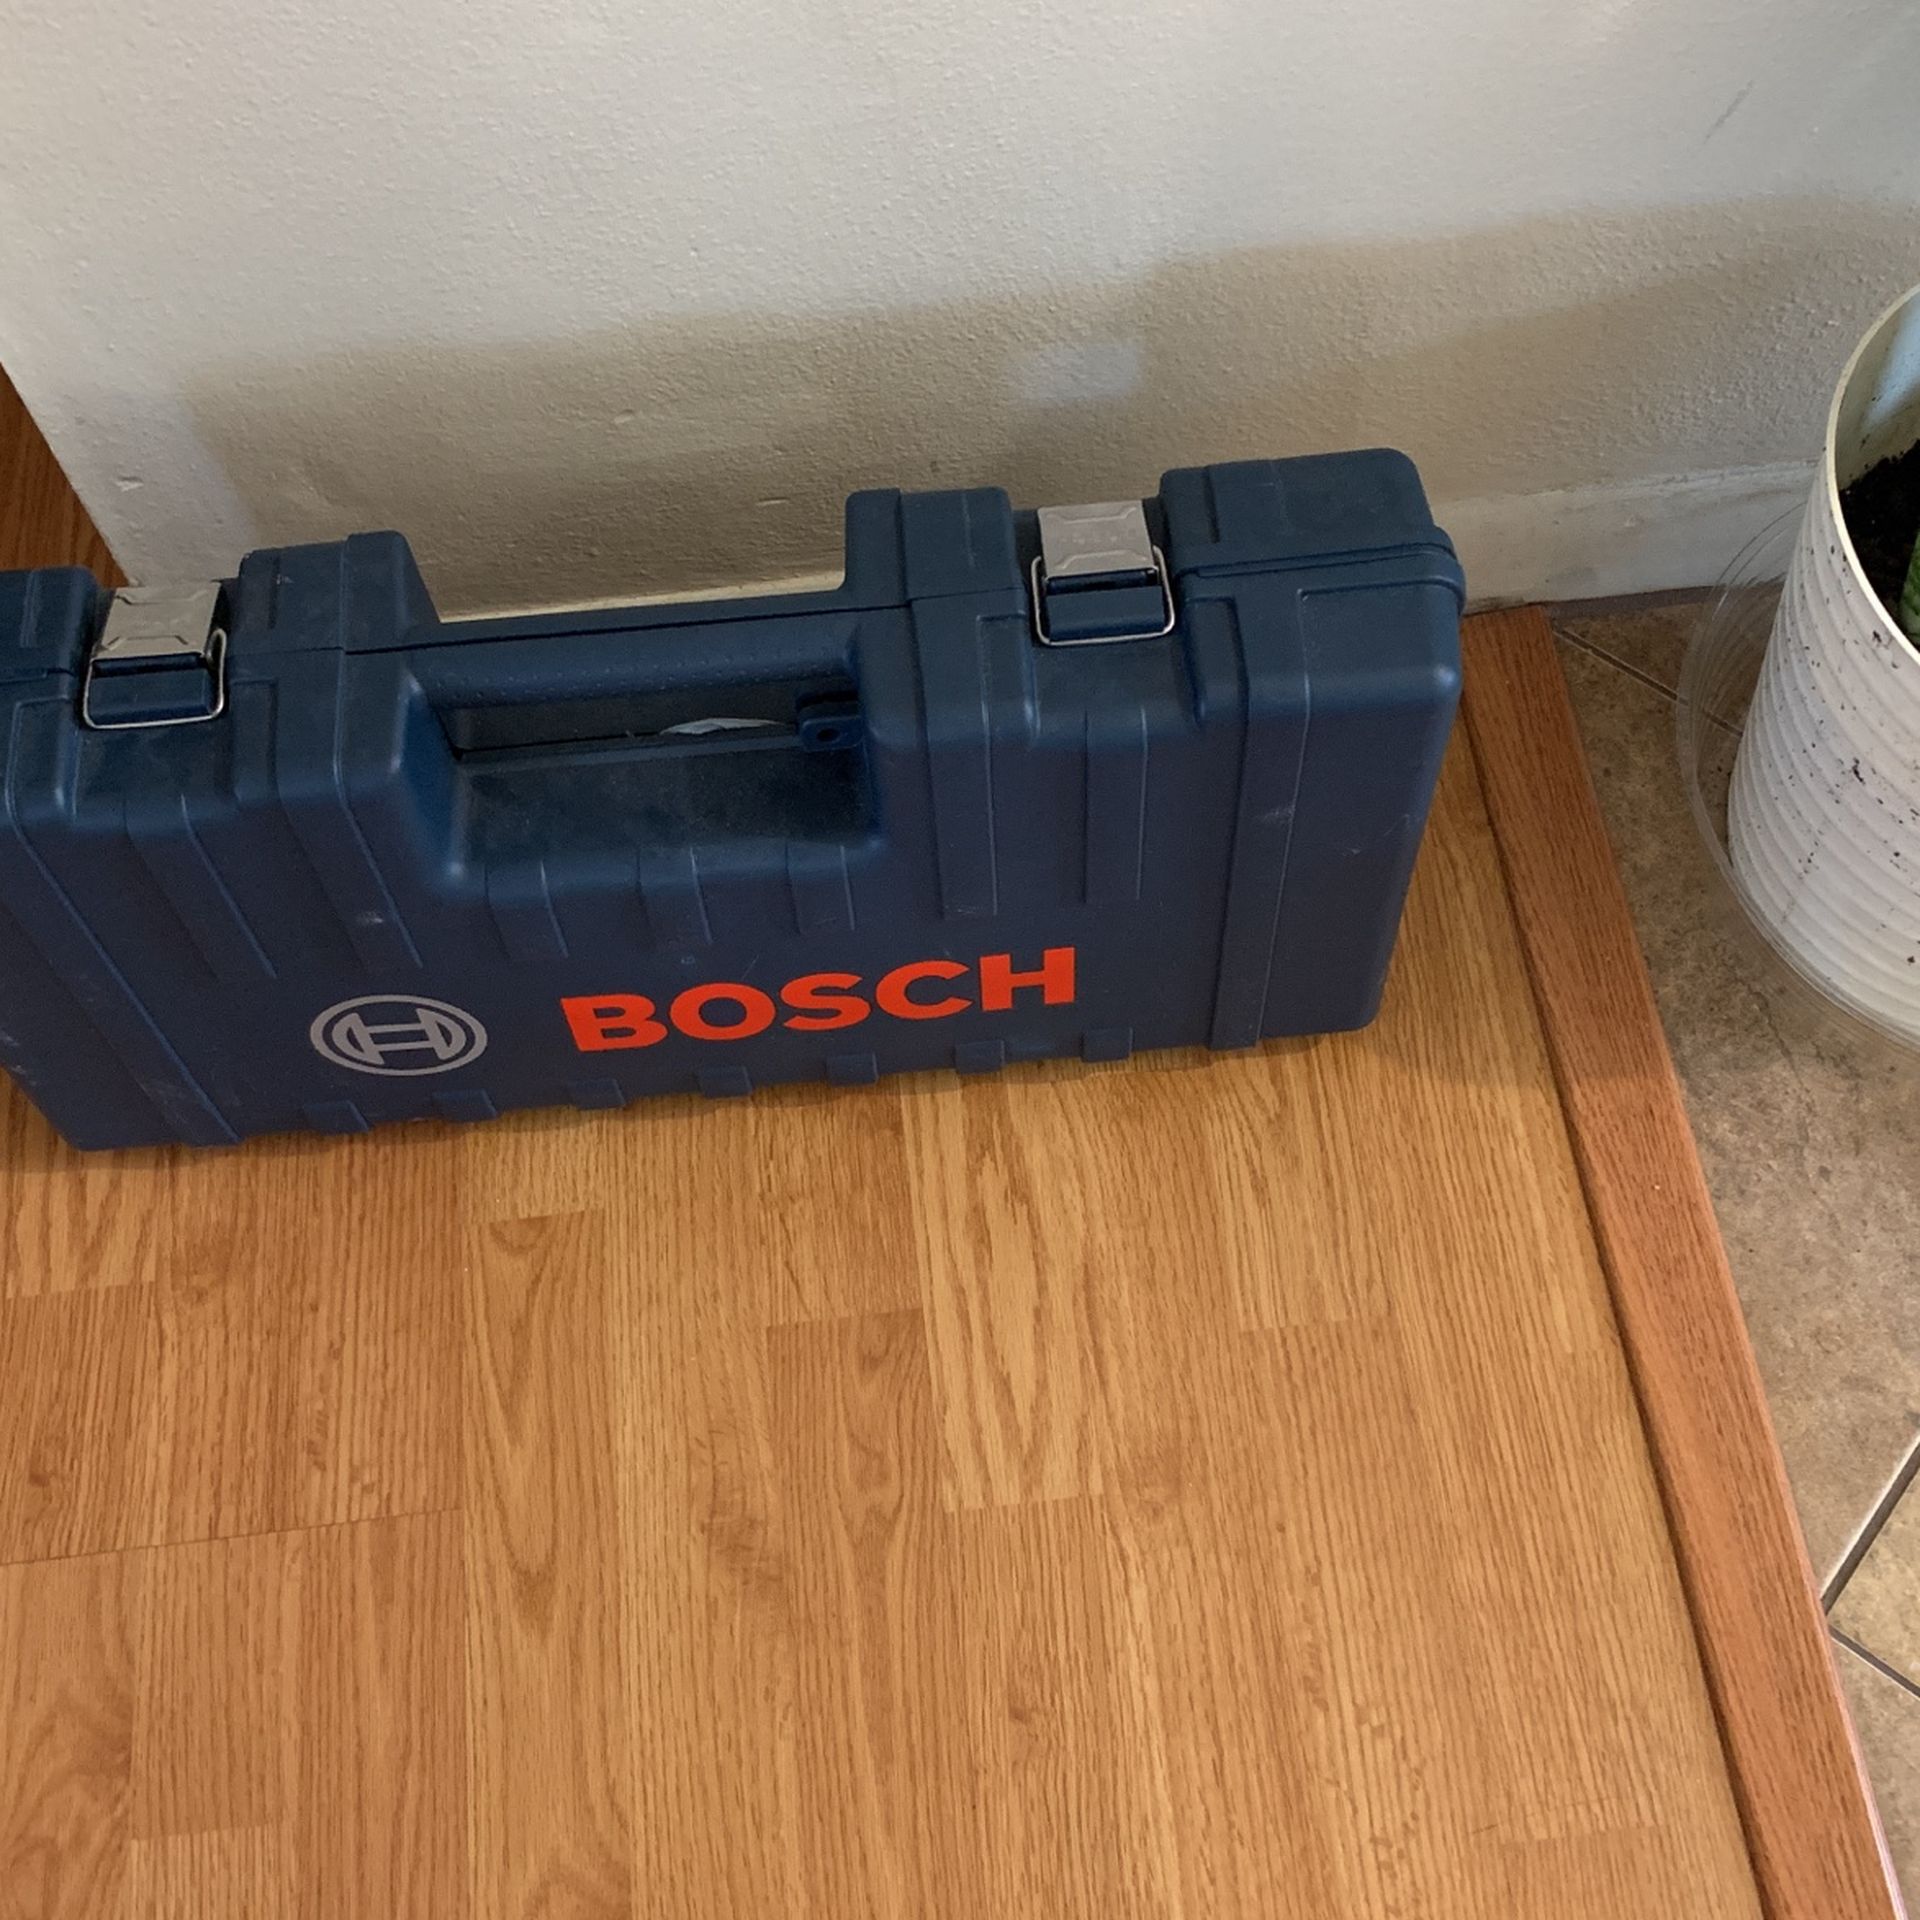 Bosch Drill(cement)